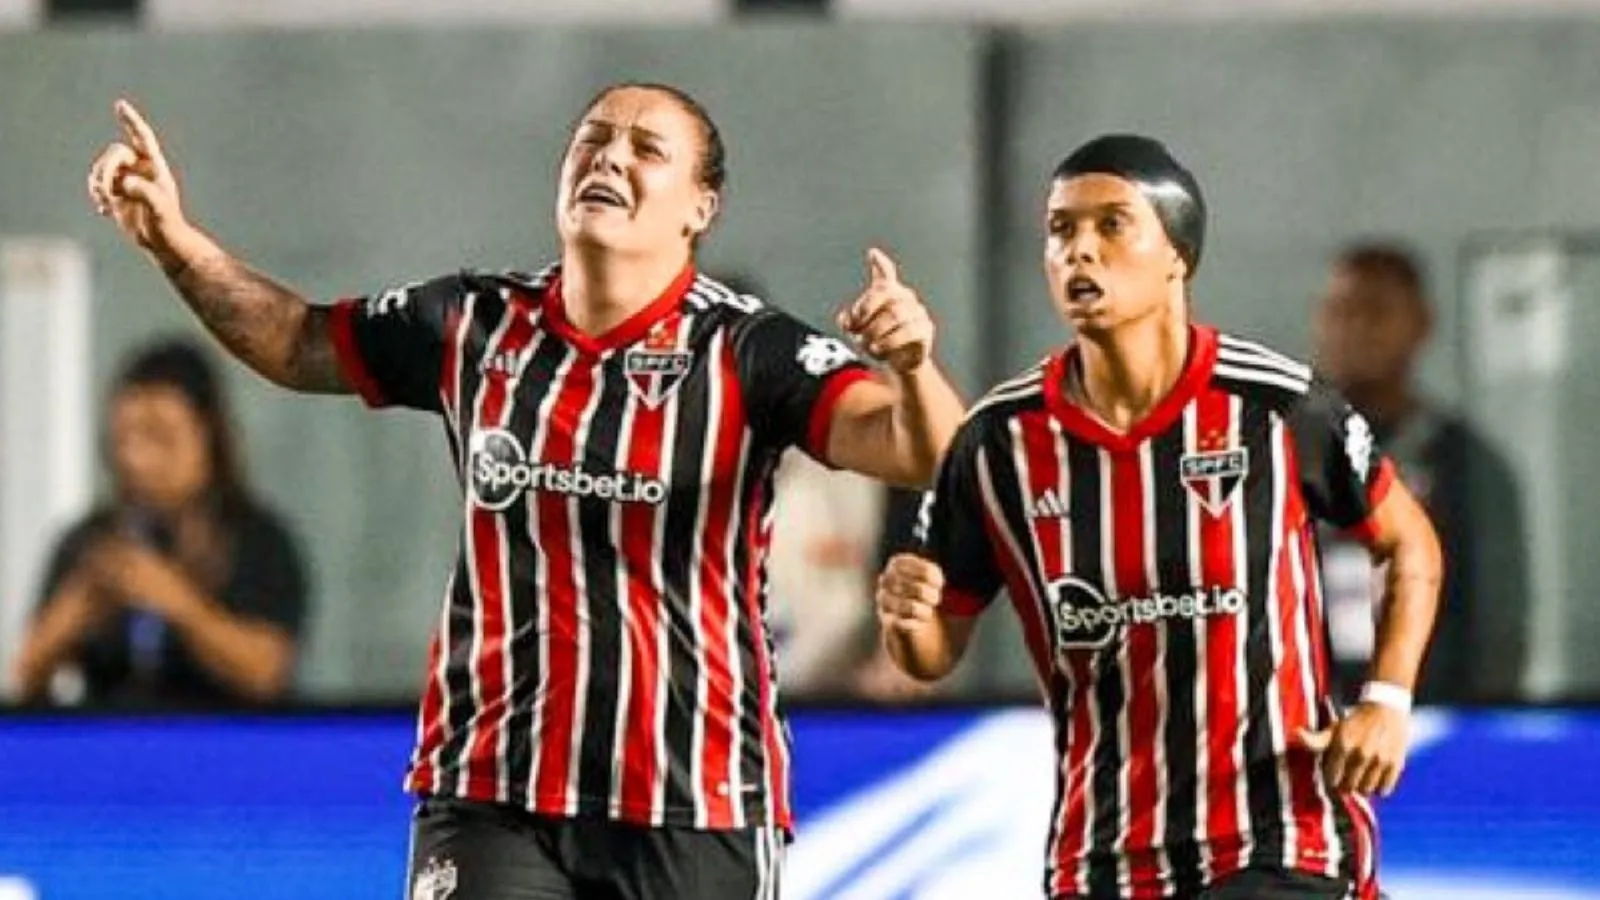 São Paulo elimina o Santos e é finalista do Paulista Feminino